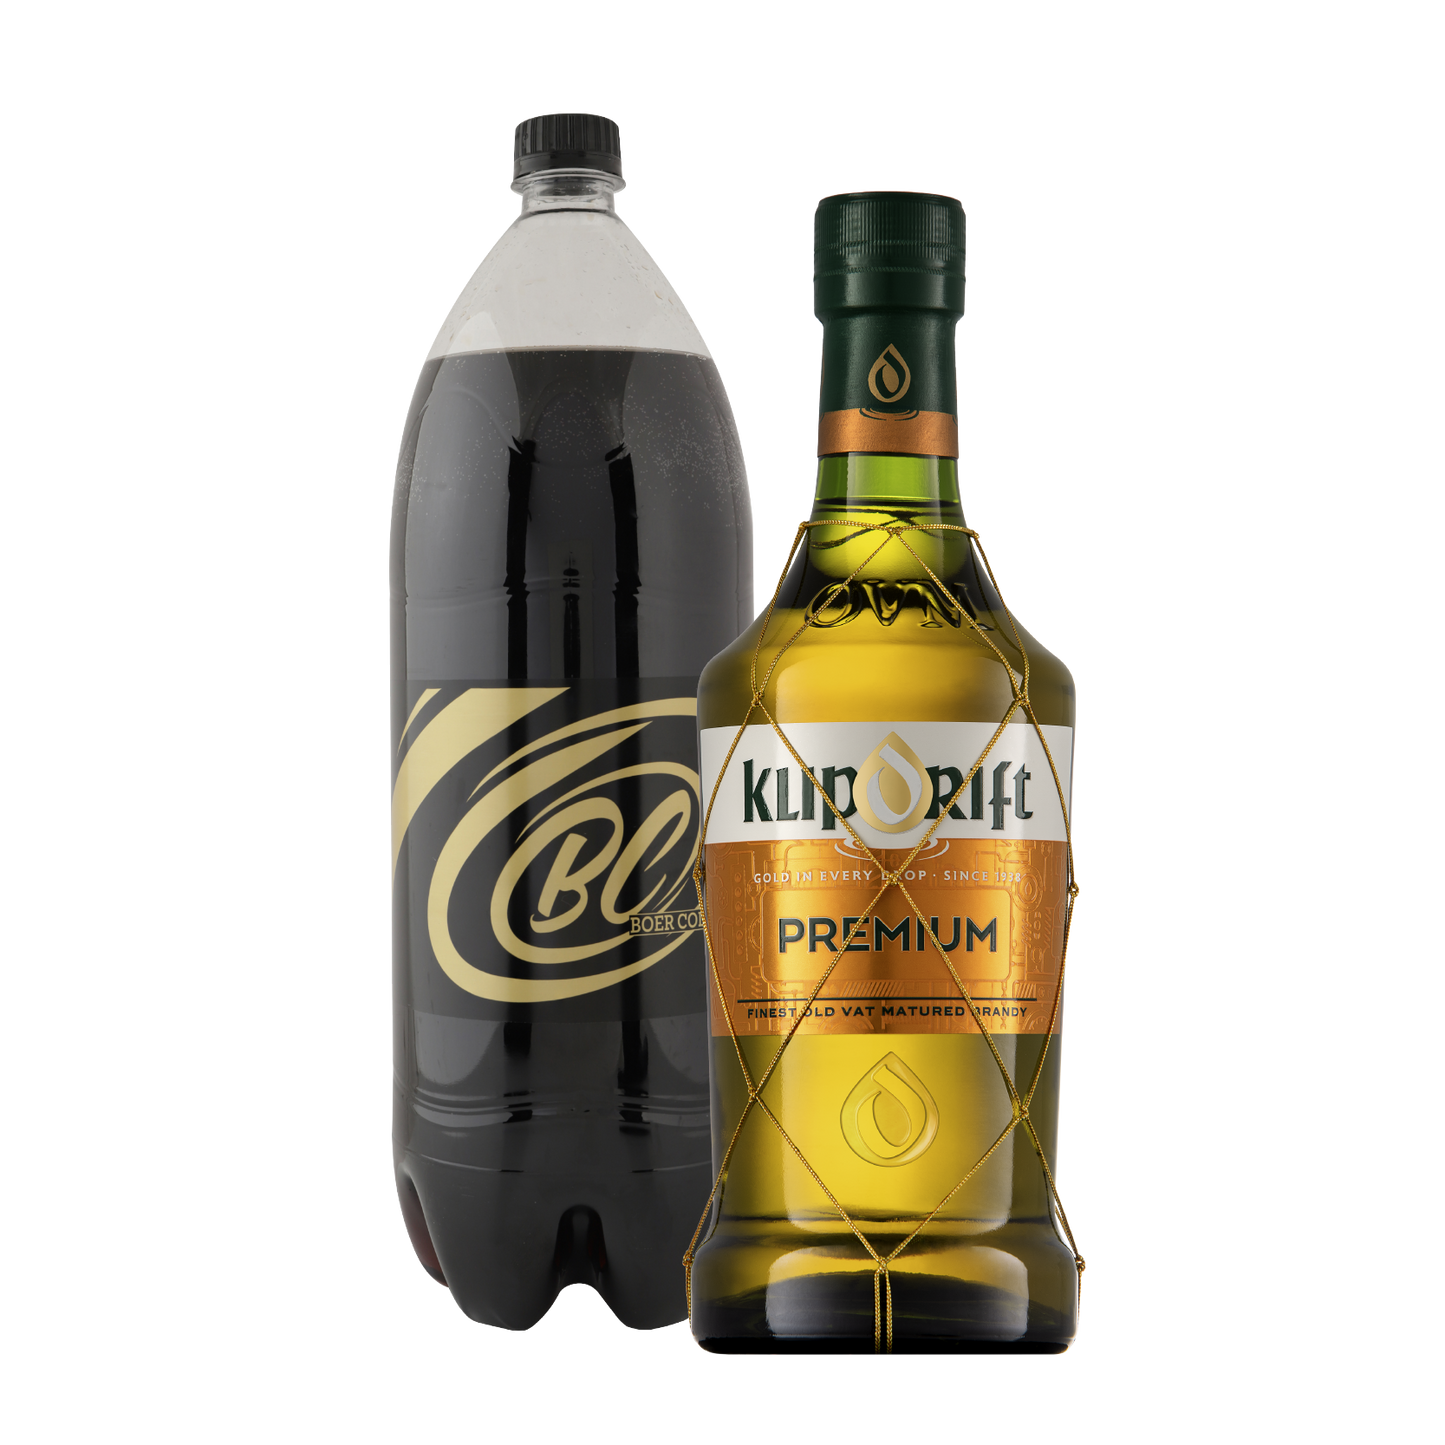 Klipdrift Premium Brandy 750ml & Boer Cola 2L